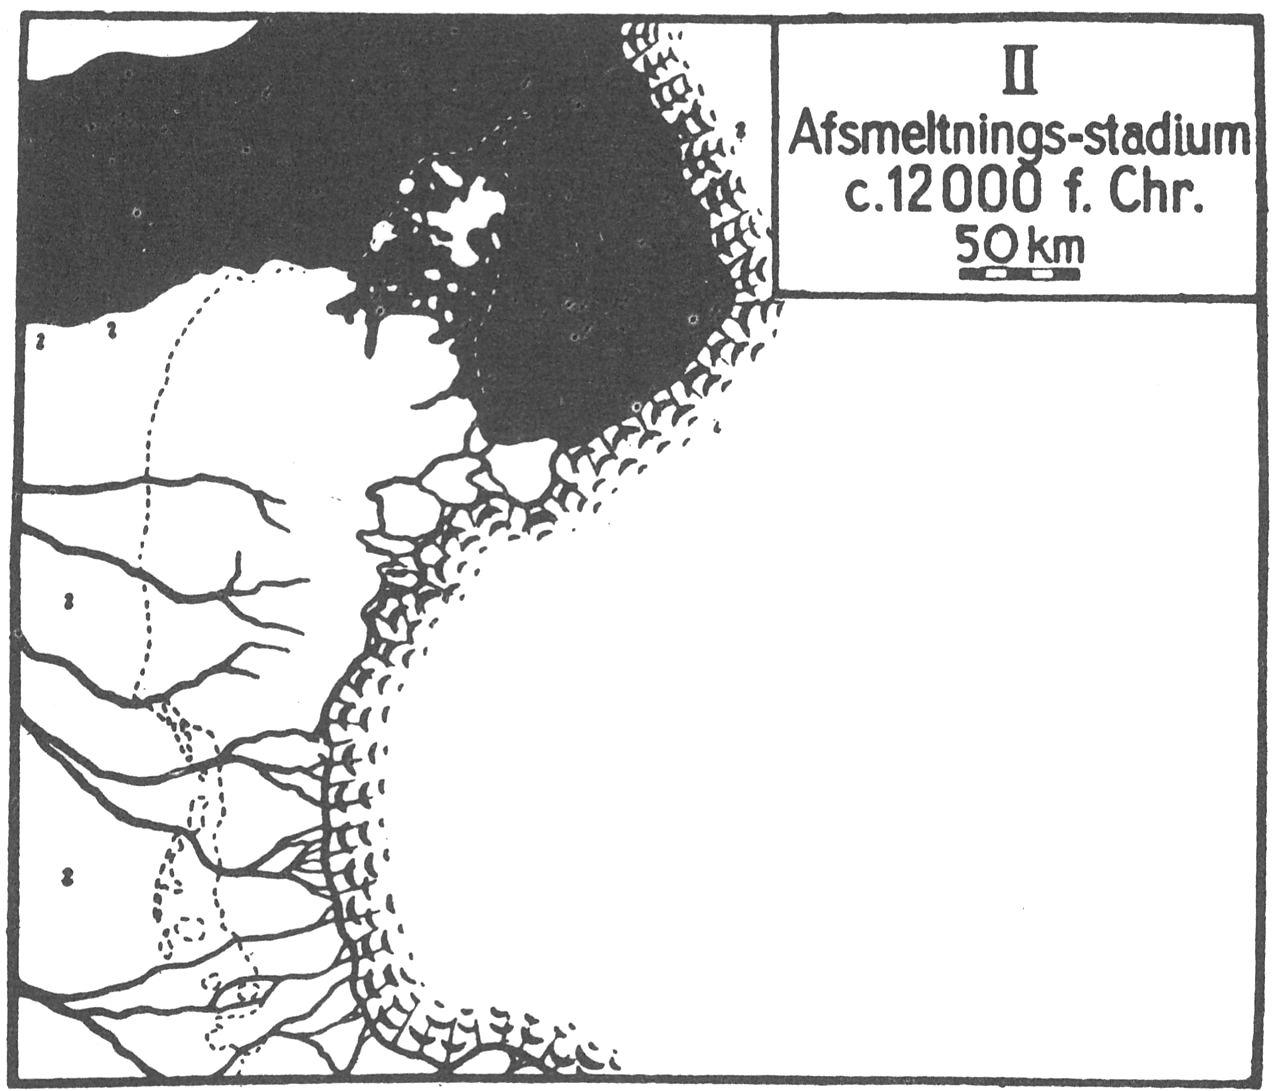 (Kort). Indlandsisen er smeltet tilbage, og dens rand står nu i Østjylland. I Djursland ophobes vældige morænemasser langs isranden, Mols Bjerge. Det senglaciale hav har i Vendsyssel haft stor udbredelse, og morænelandskabets højeste dele rager op som øer. Gudenåens løb med hovedretning fra syd til nord udformes i denne tid, da isranden indgår som et væsentligt landskabselement med afgørende betydning for vandløbsmønsteret. Tundraen var den fremherskende vegetationsform.(Efter Atlas over Danmark).